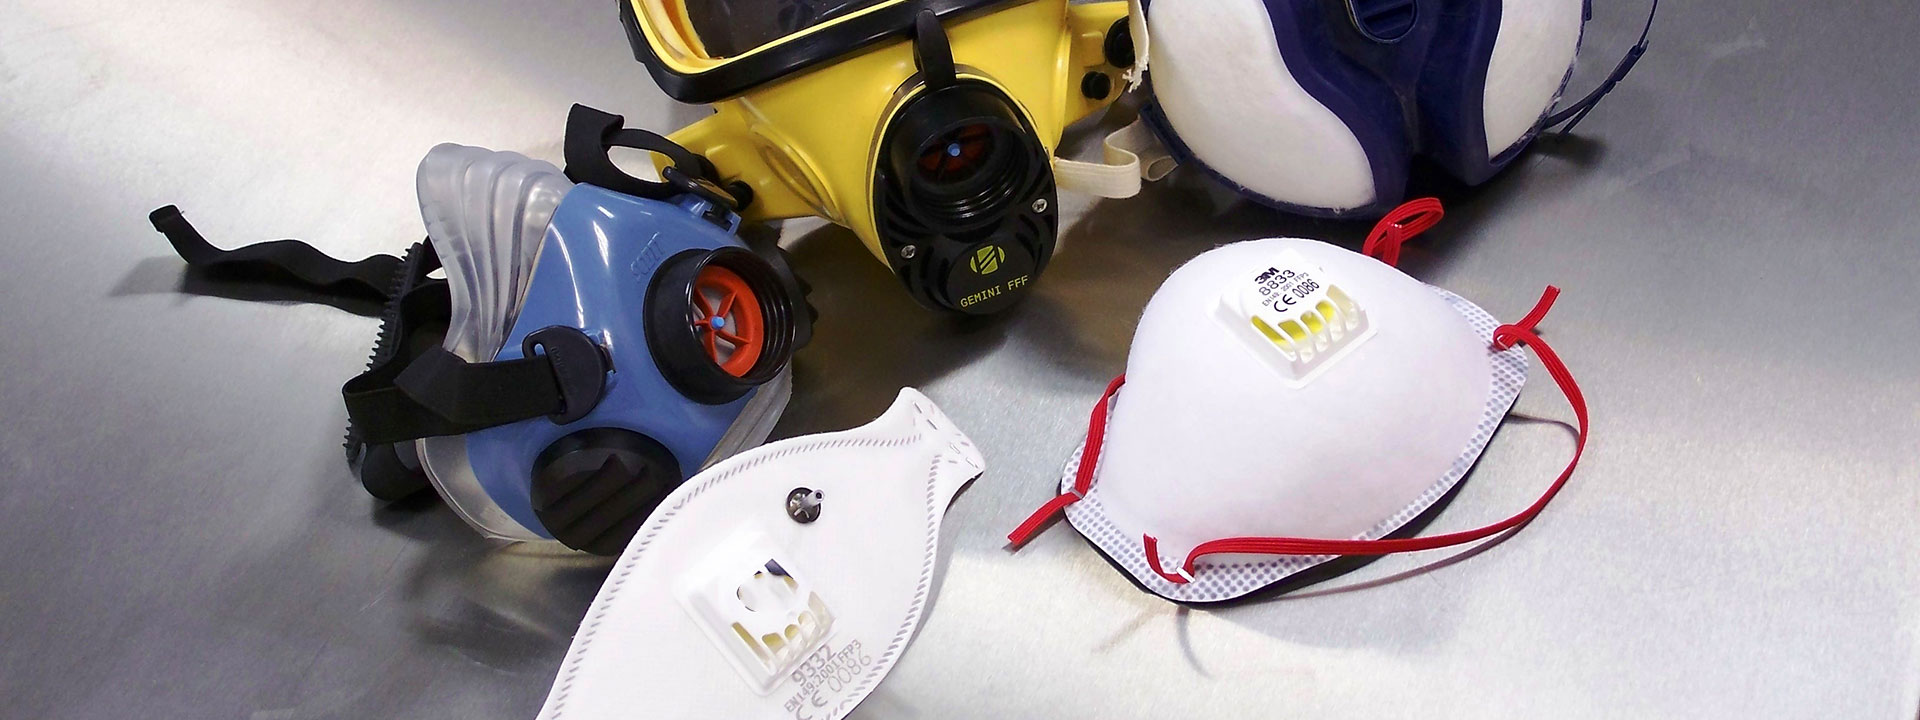 EN 140 Dispositivos de protección respiratoria - Medias máscaras y cuartos de máscaras - Propiedades, pruebas, marcado